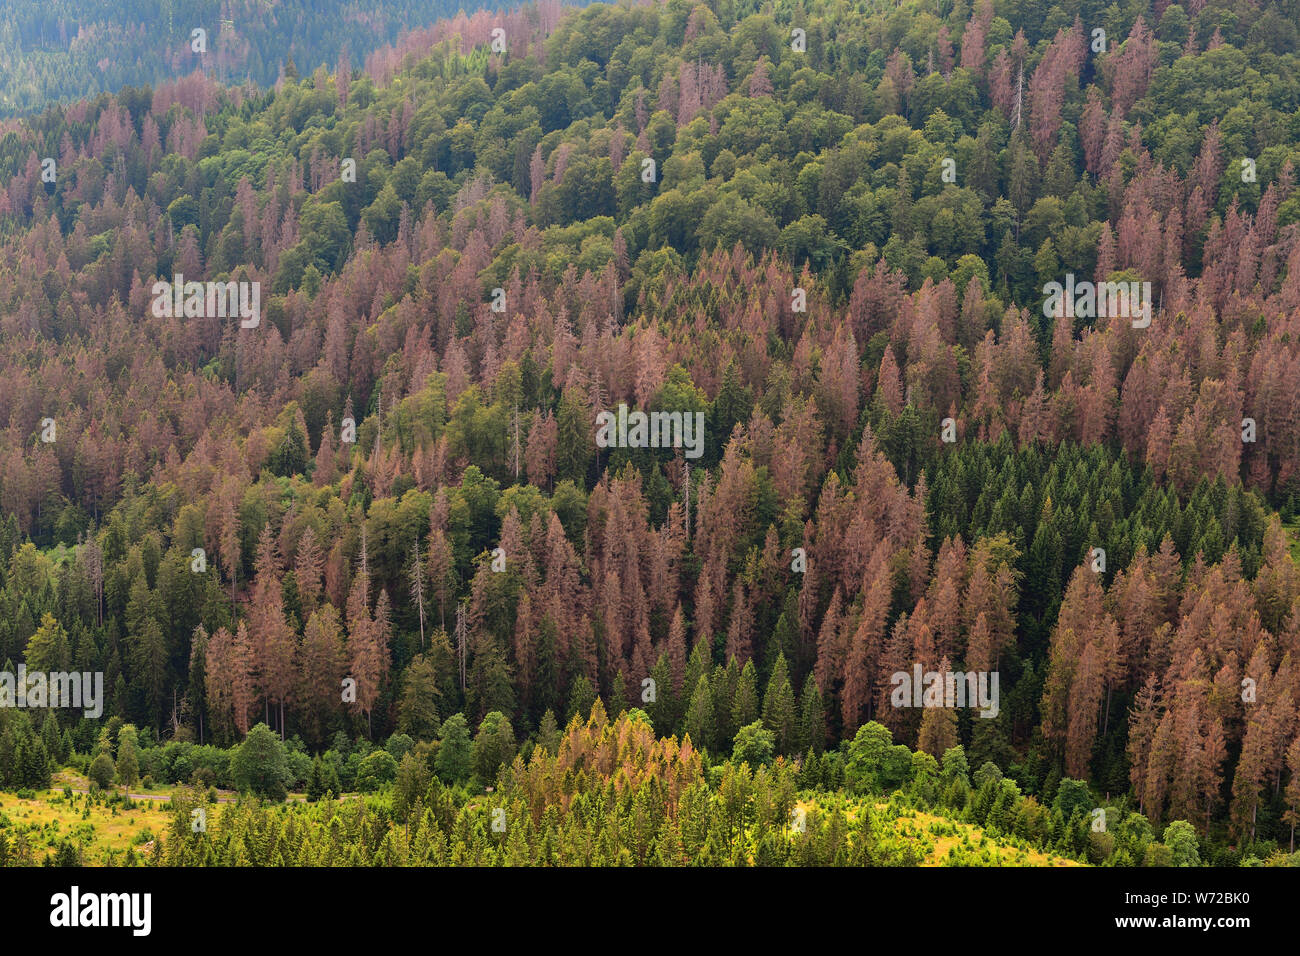 Das Waldsterben in Deutschland, in Europa. Sterbende Bäume im Nationalpark Harz, Niedersachsen Fichte. Trockenheit und Borkenkäfer Plage, Sommer 2019. Stockfoto